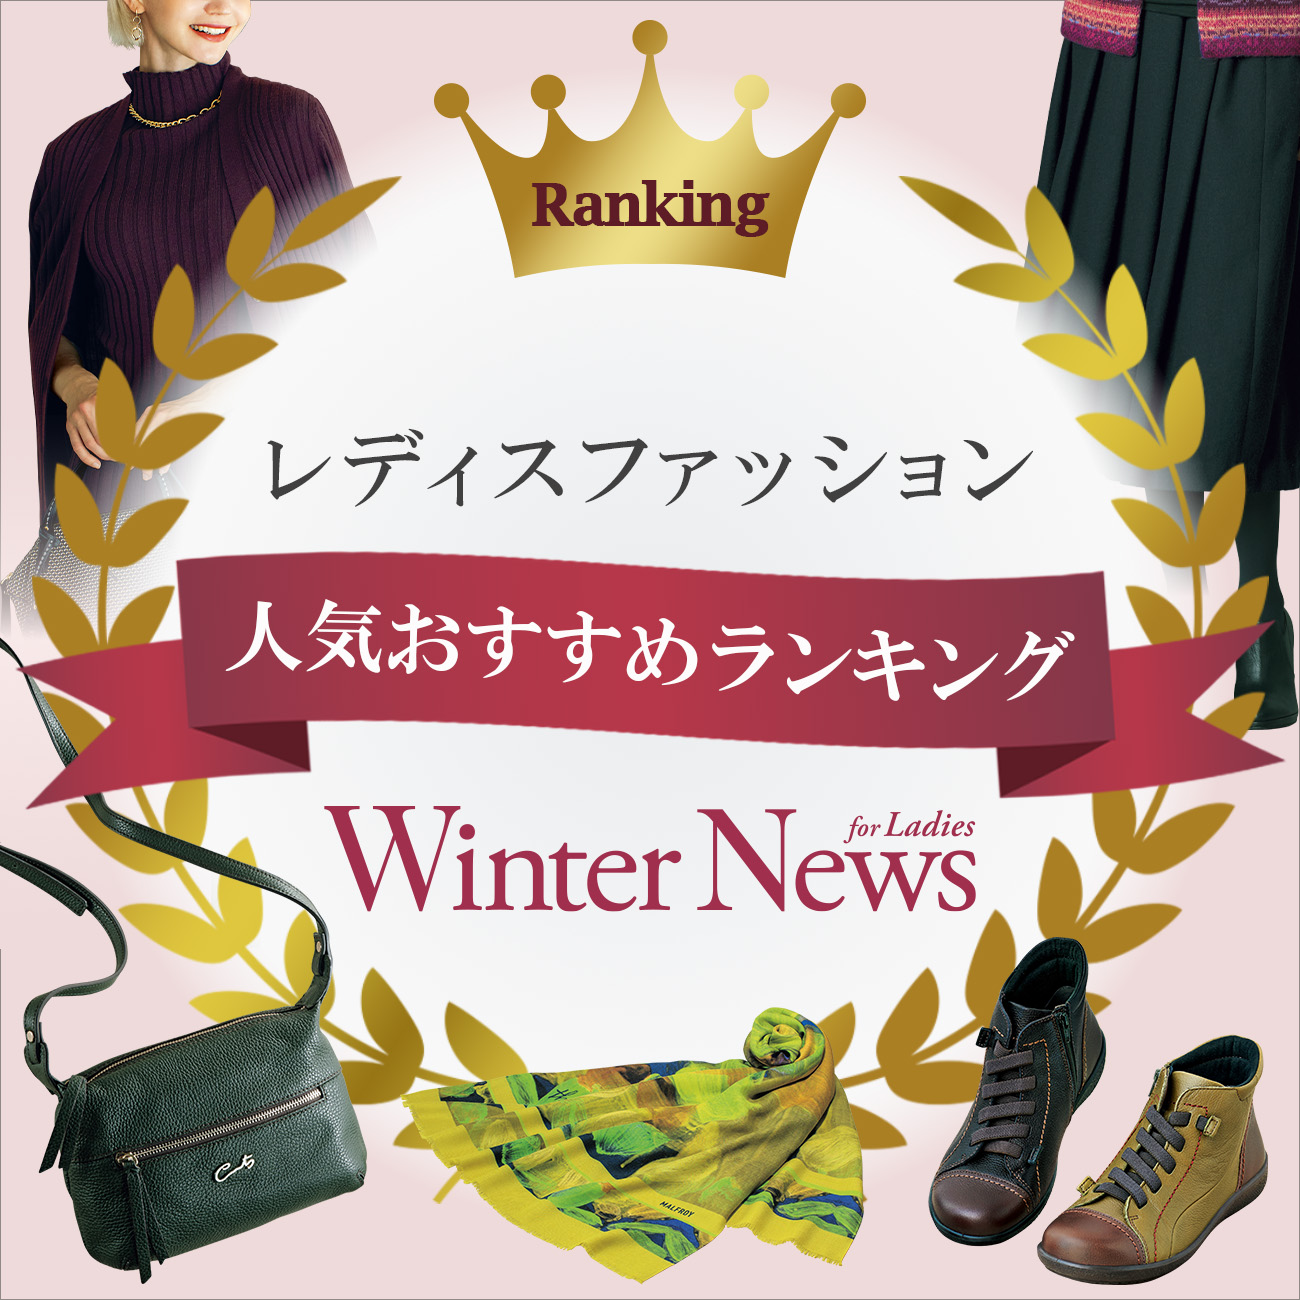 【特集】レディス人気おすすめランキング Winter News for Ladies 